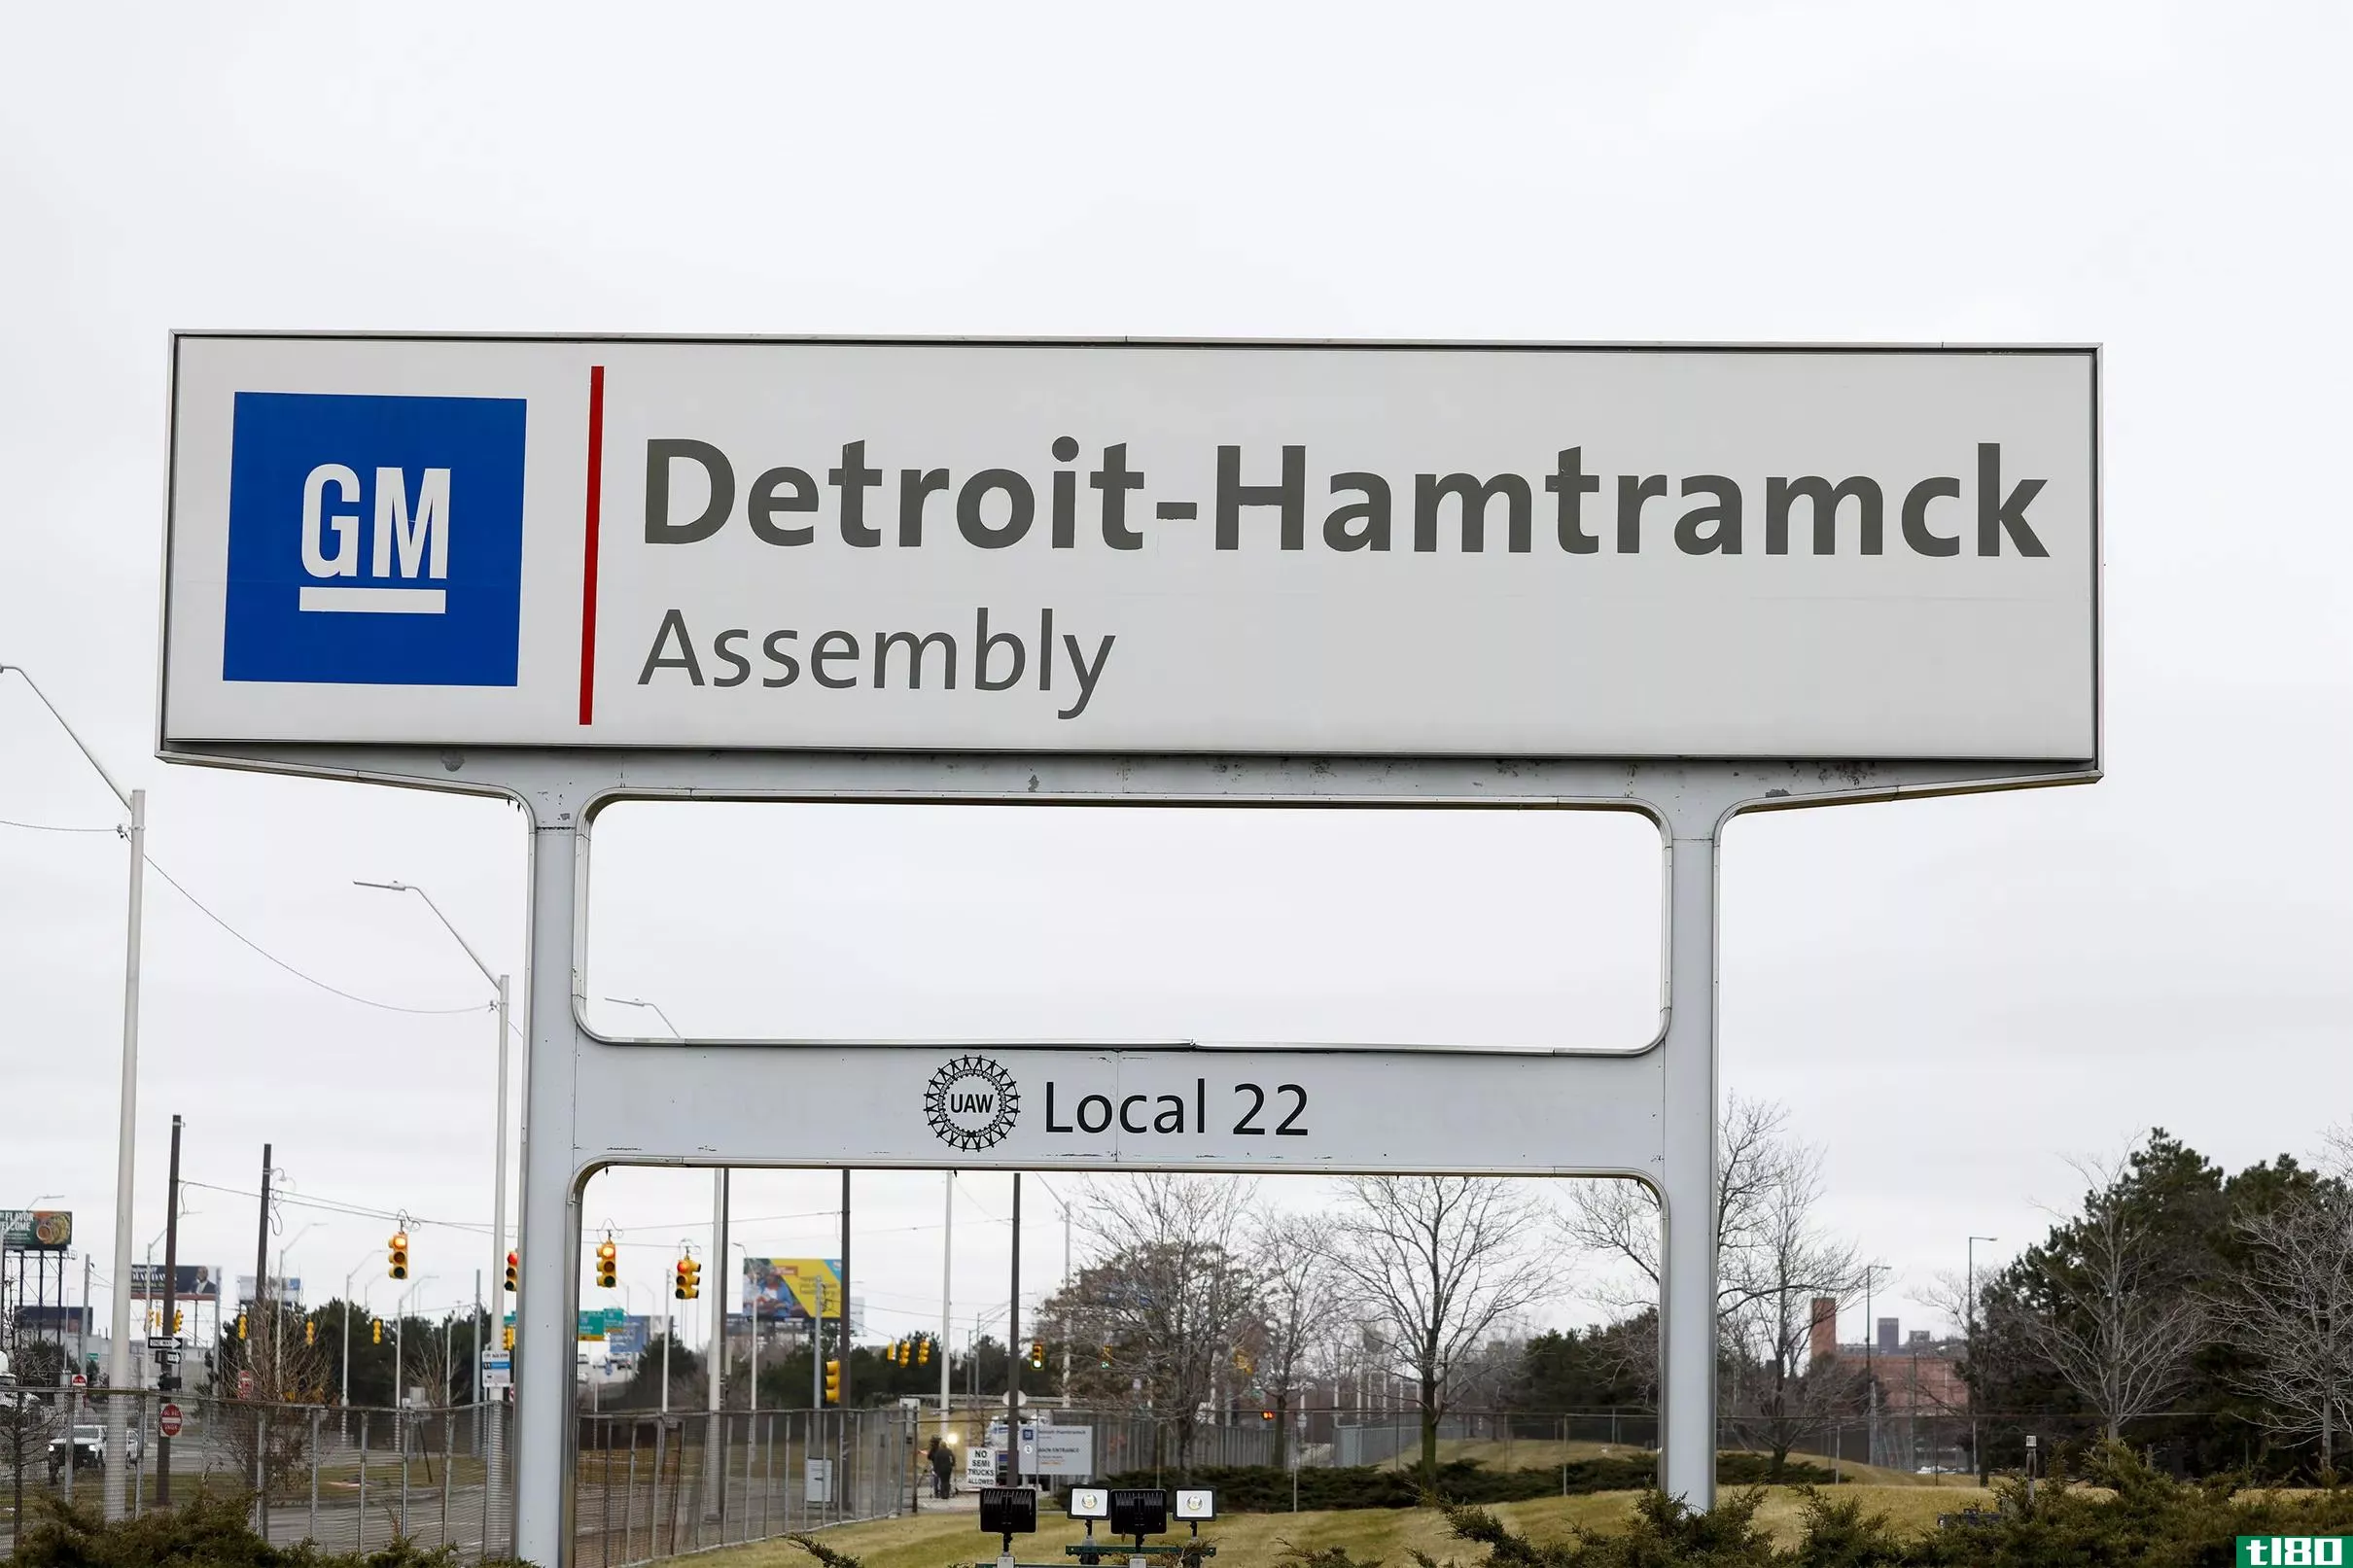 通用汽车将其底特律哈姆特拉姆克工厂更名为电动汽车和自动汽车的“零工厂”